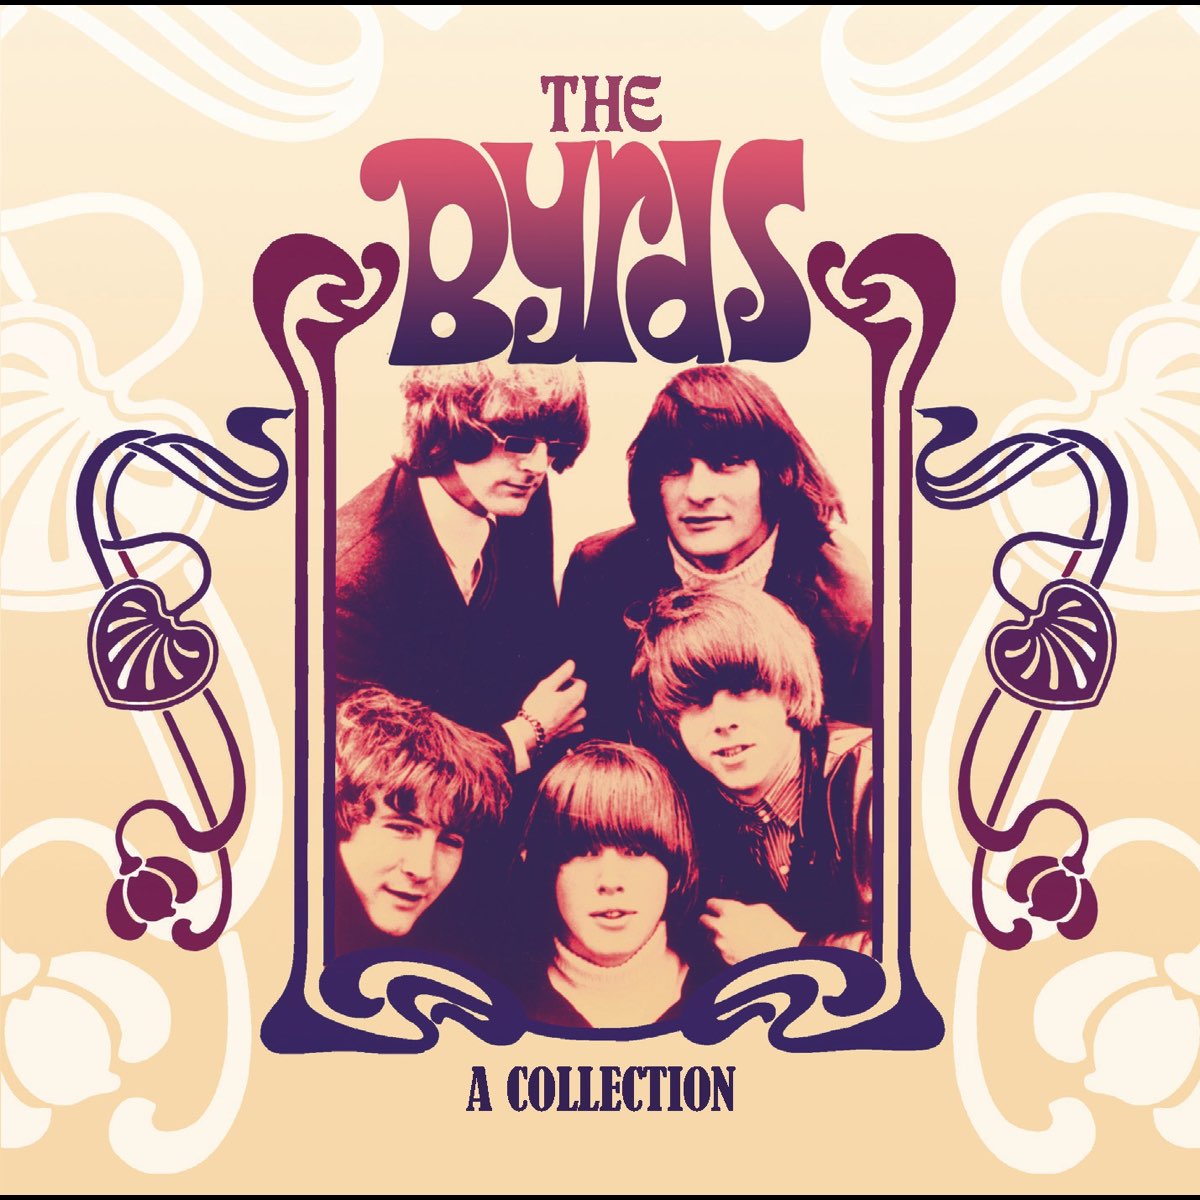 Ii feeling. Группа the Byrds. The Byrds дискография. The Byrds американская рок-группа. Обложка альбомы группы the Byrds.